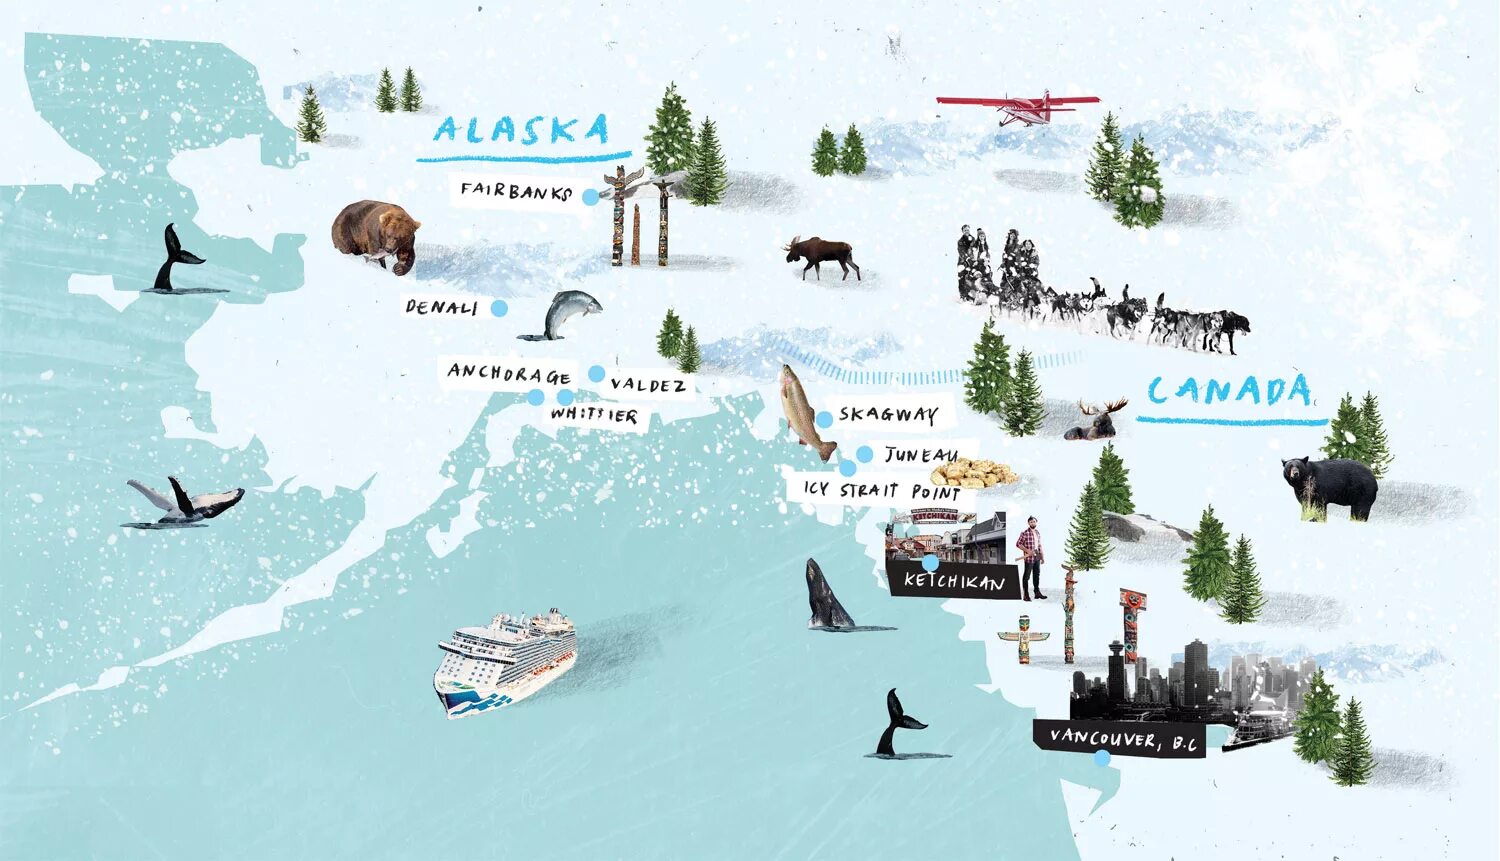 Аудиокнига аляски. Аляска для журнала. Географическая карта Аляски. Порт Протекшн на карте Аляска. Аляска для дошкольников в картинках.